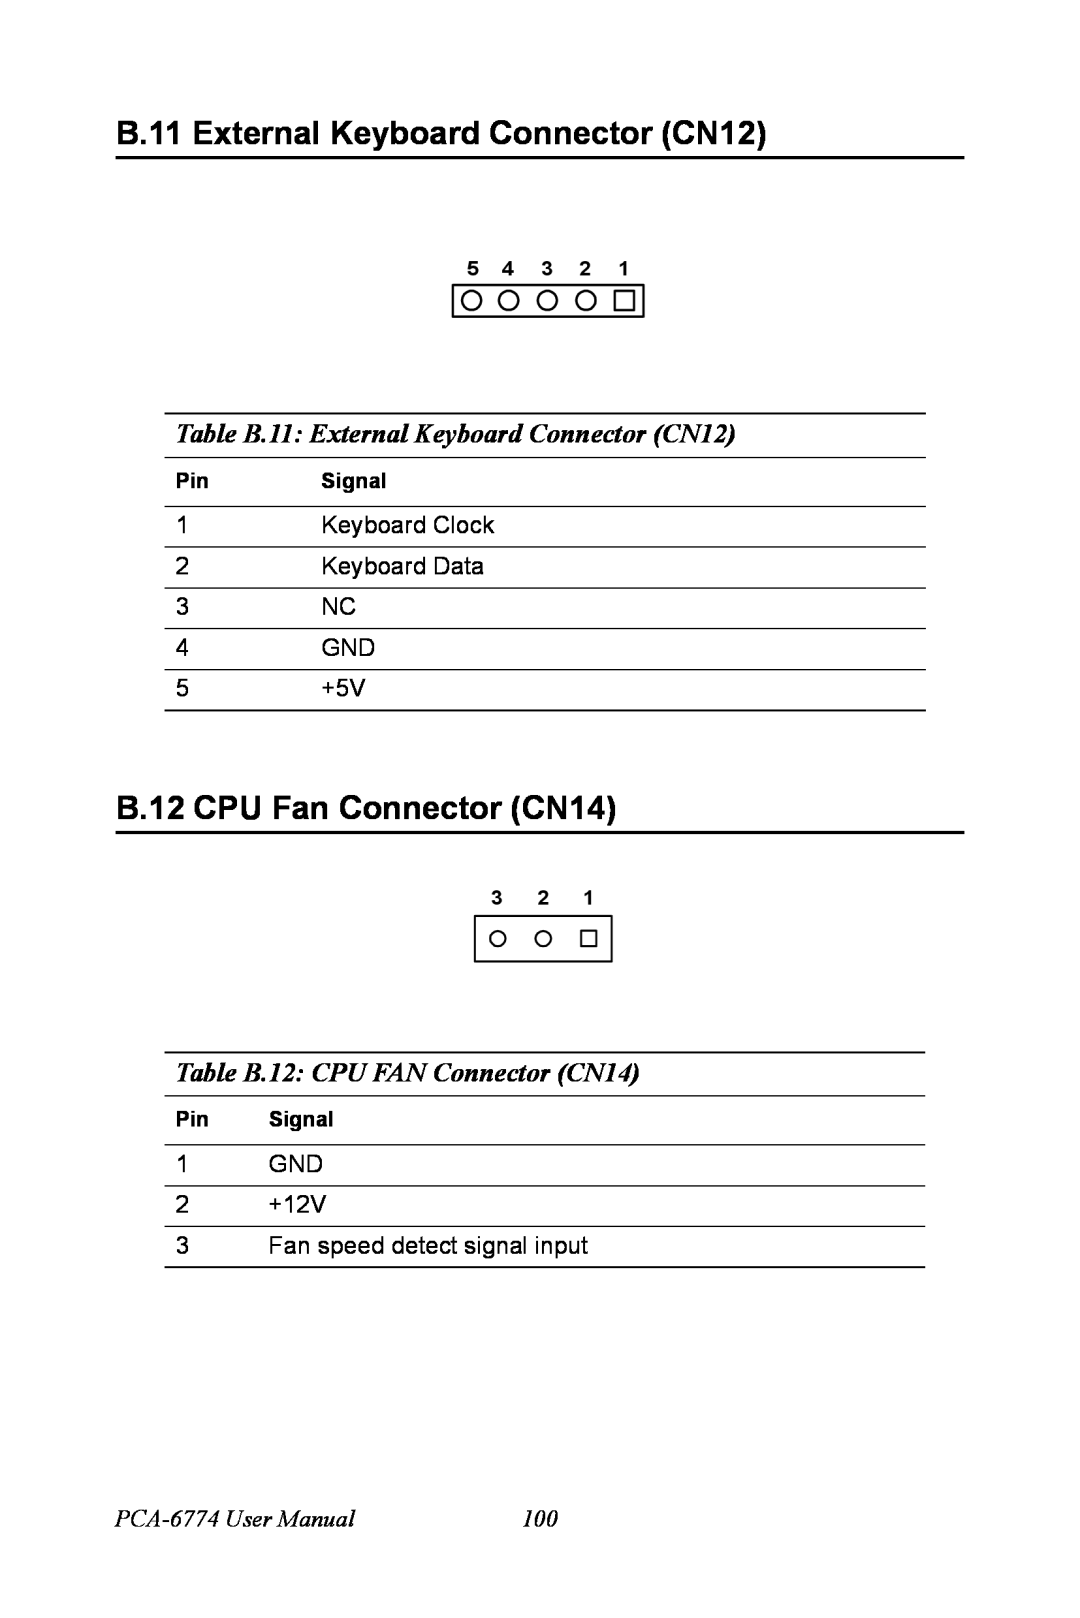 Advantech PCA-6774 B.11 External Keyboard Connector CN12, B.12 CPU Fan Connector CN14, Table B.12 CPU FAN Connector CN14 